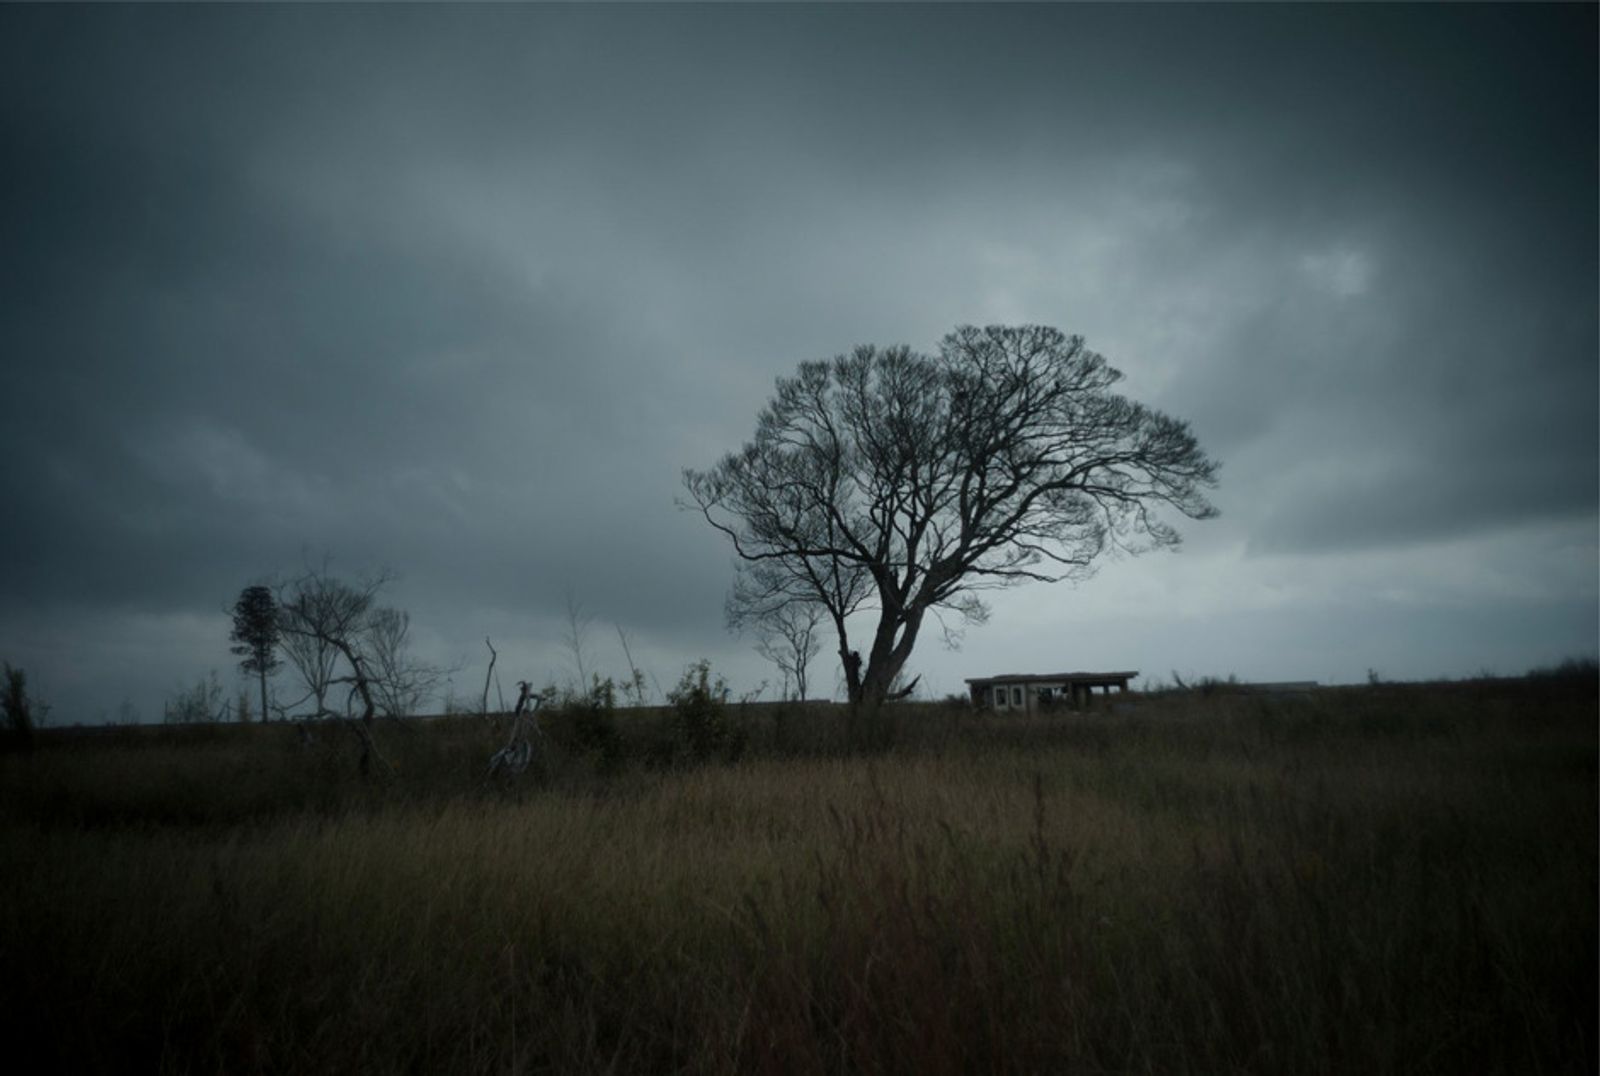 © Soichiro Koriyama - Image from the Fukushima “Black rain” photography project